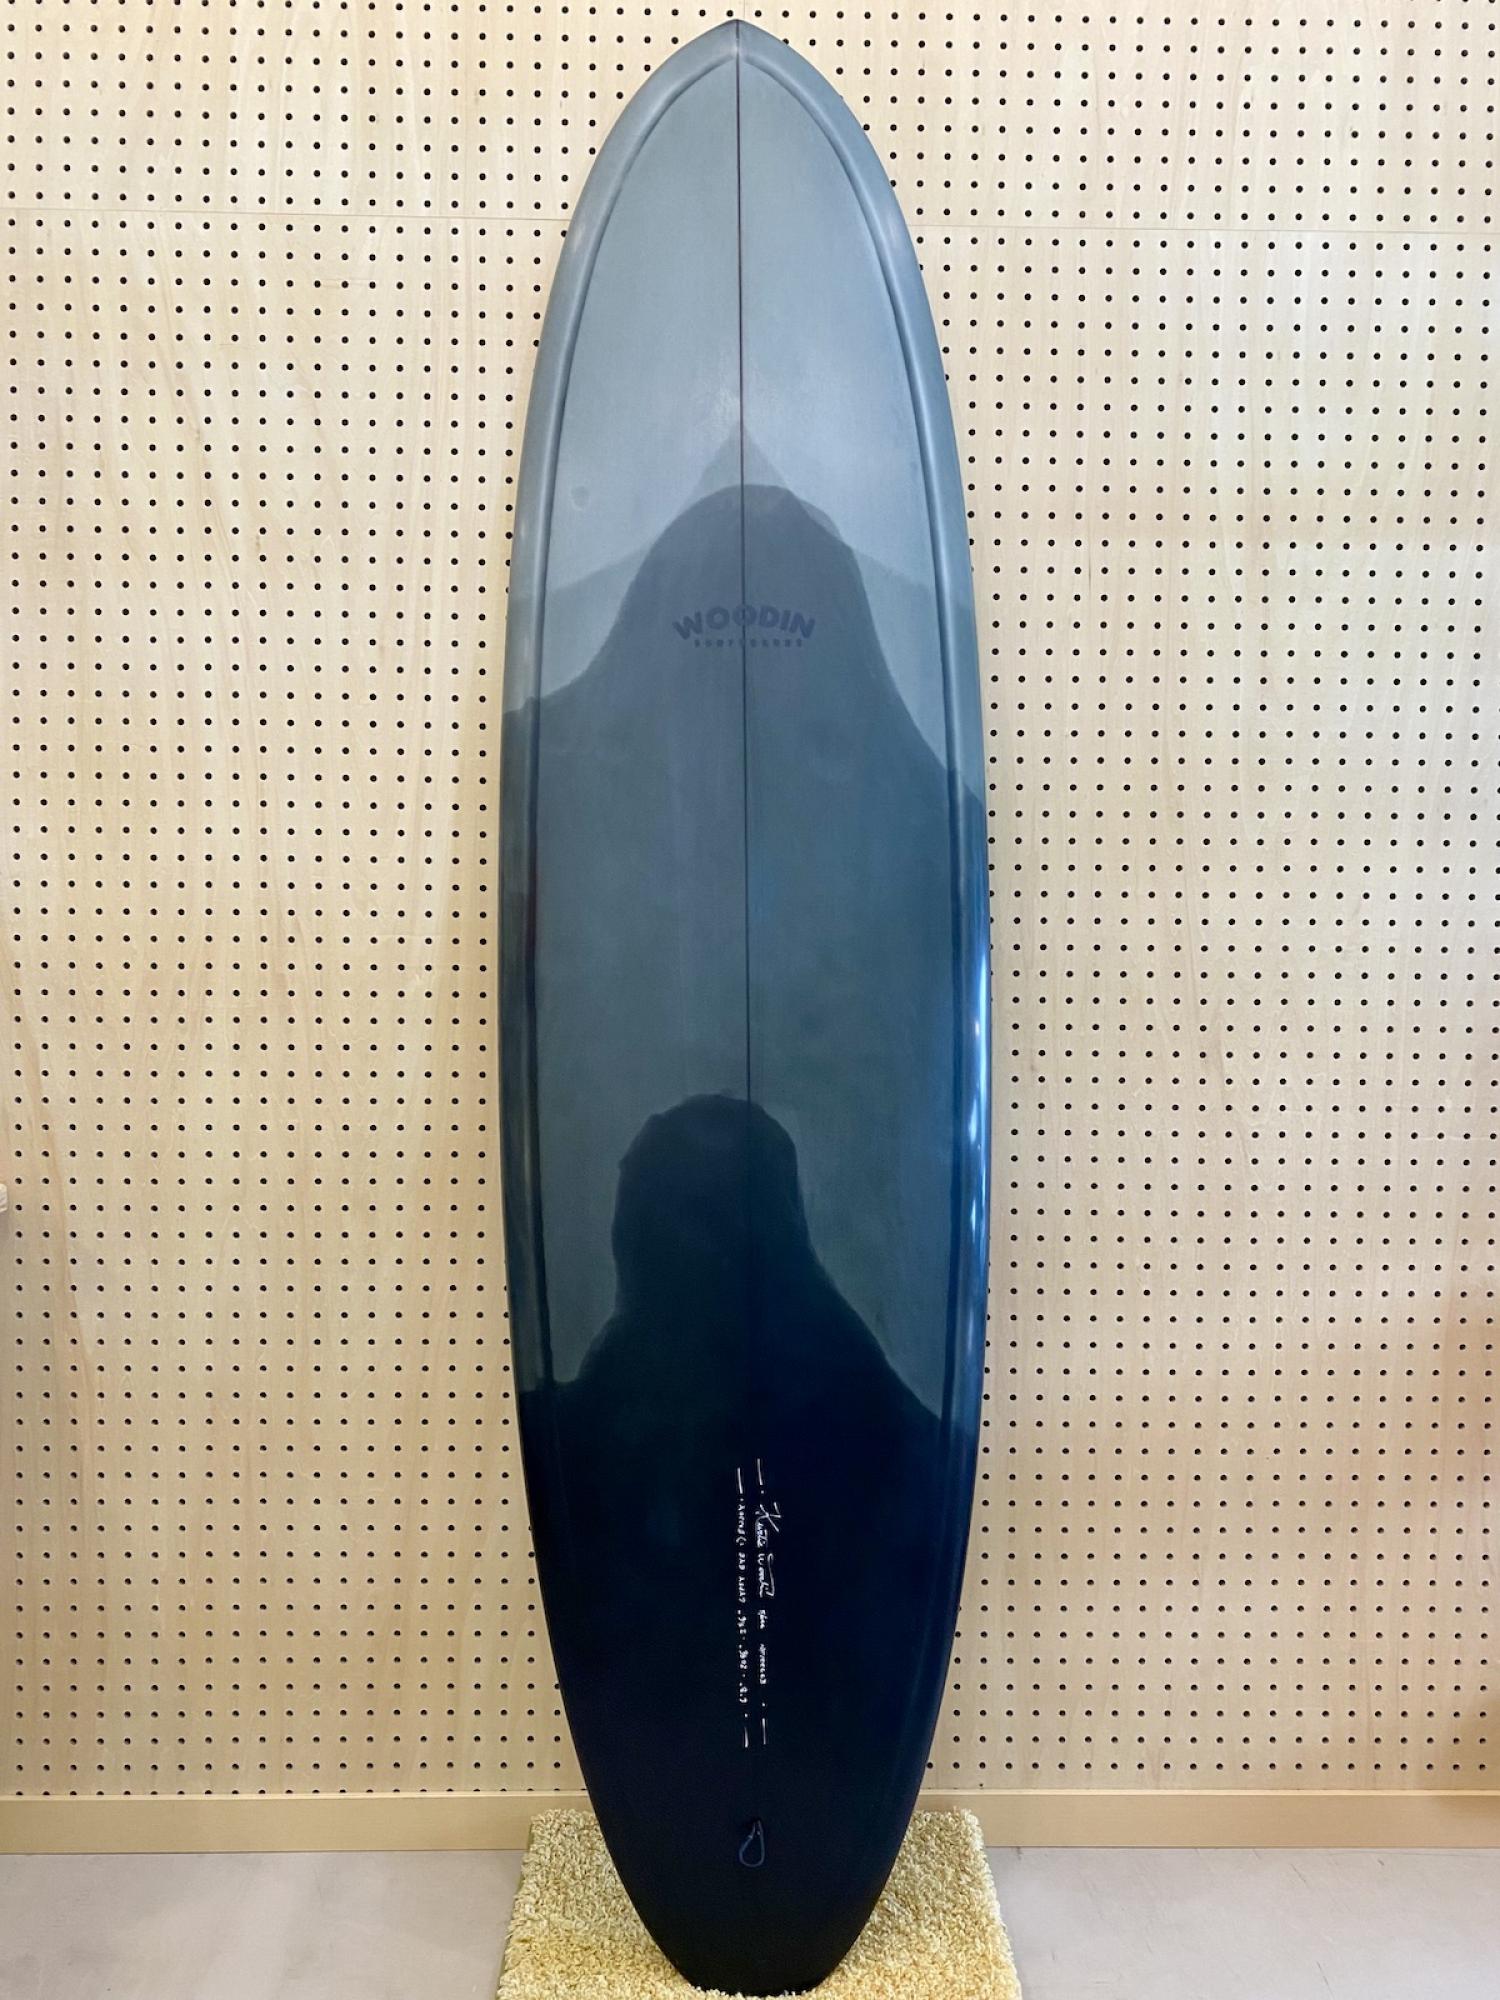 USED (Gypsy Eye model 6.8 WOODIN SURFBOARDS)